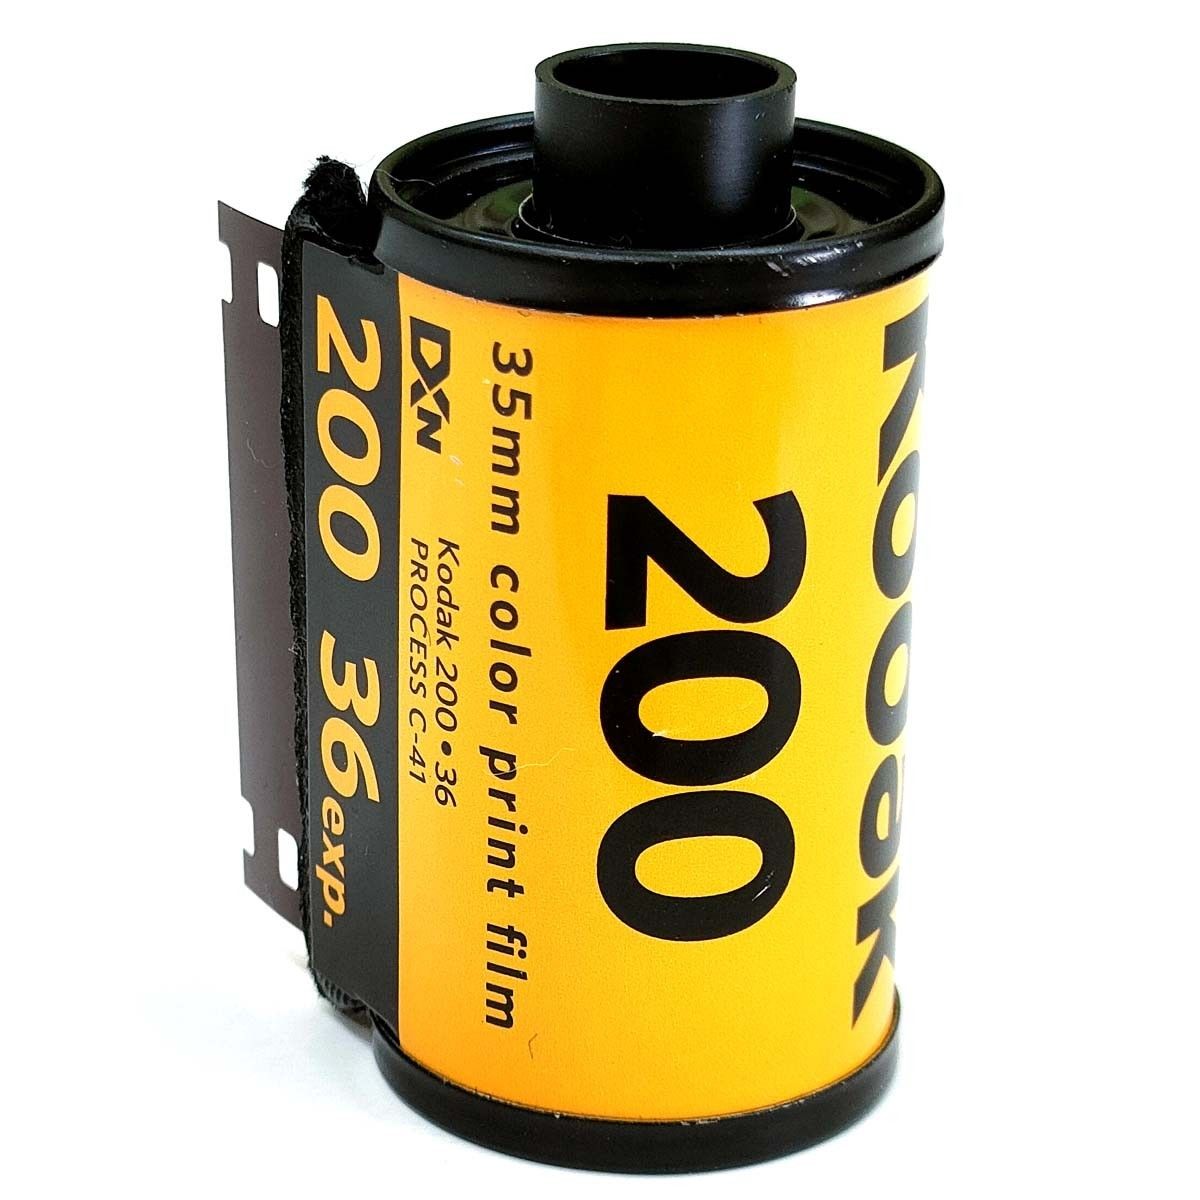 [5本セット] GOLD 200-36枚撮 Kodak ネガカラーフィルム 135/35mm 新品 コダック ネガフィルム